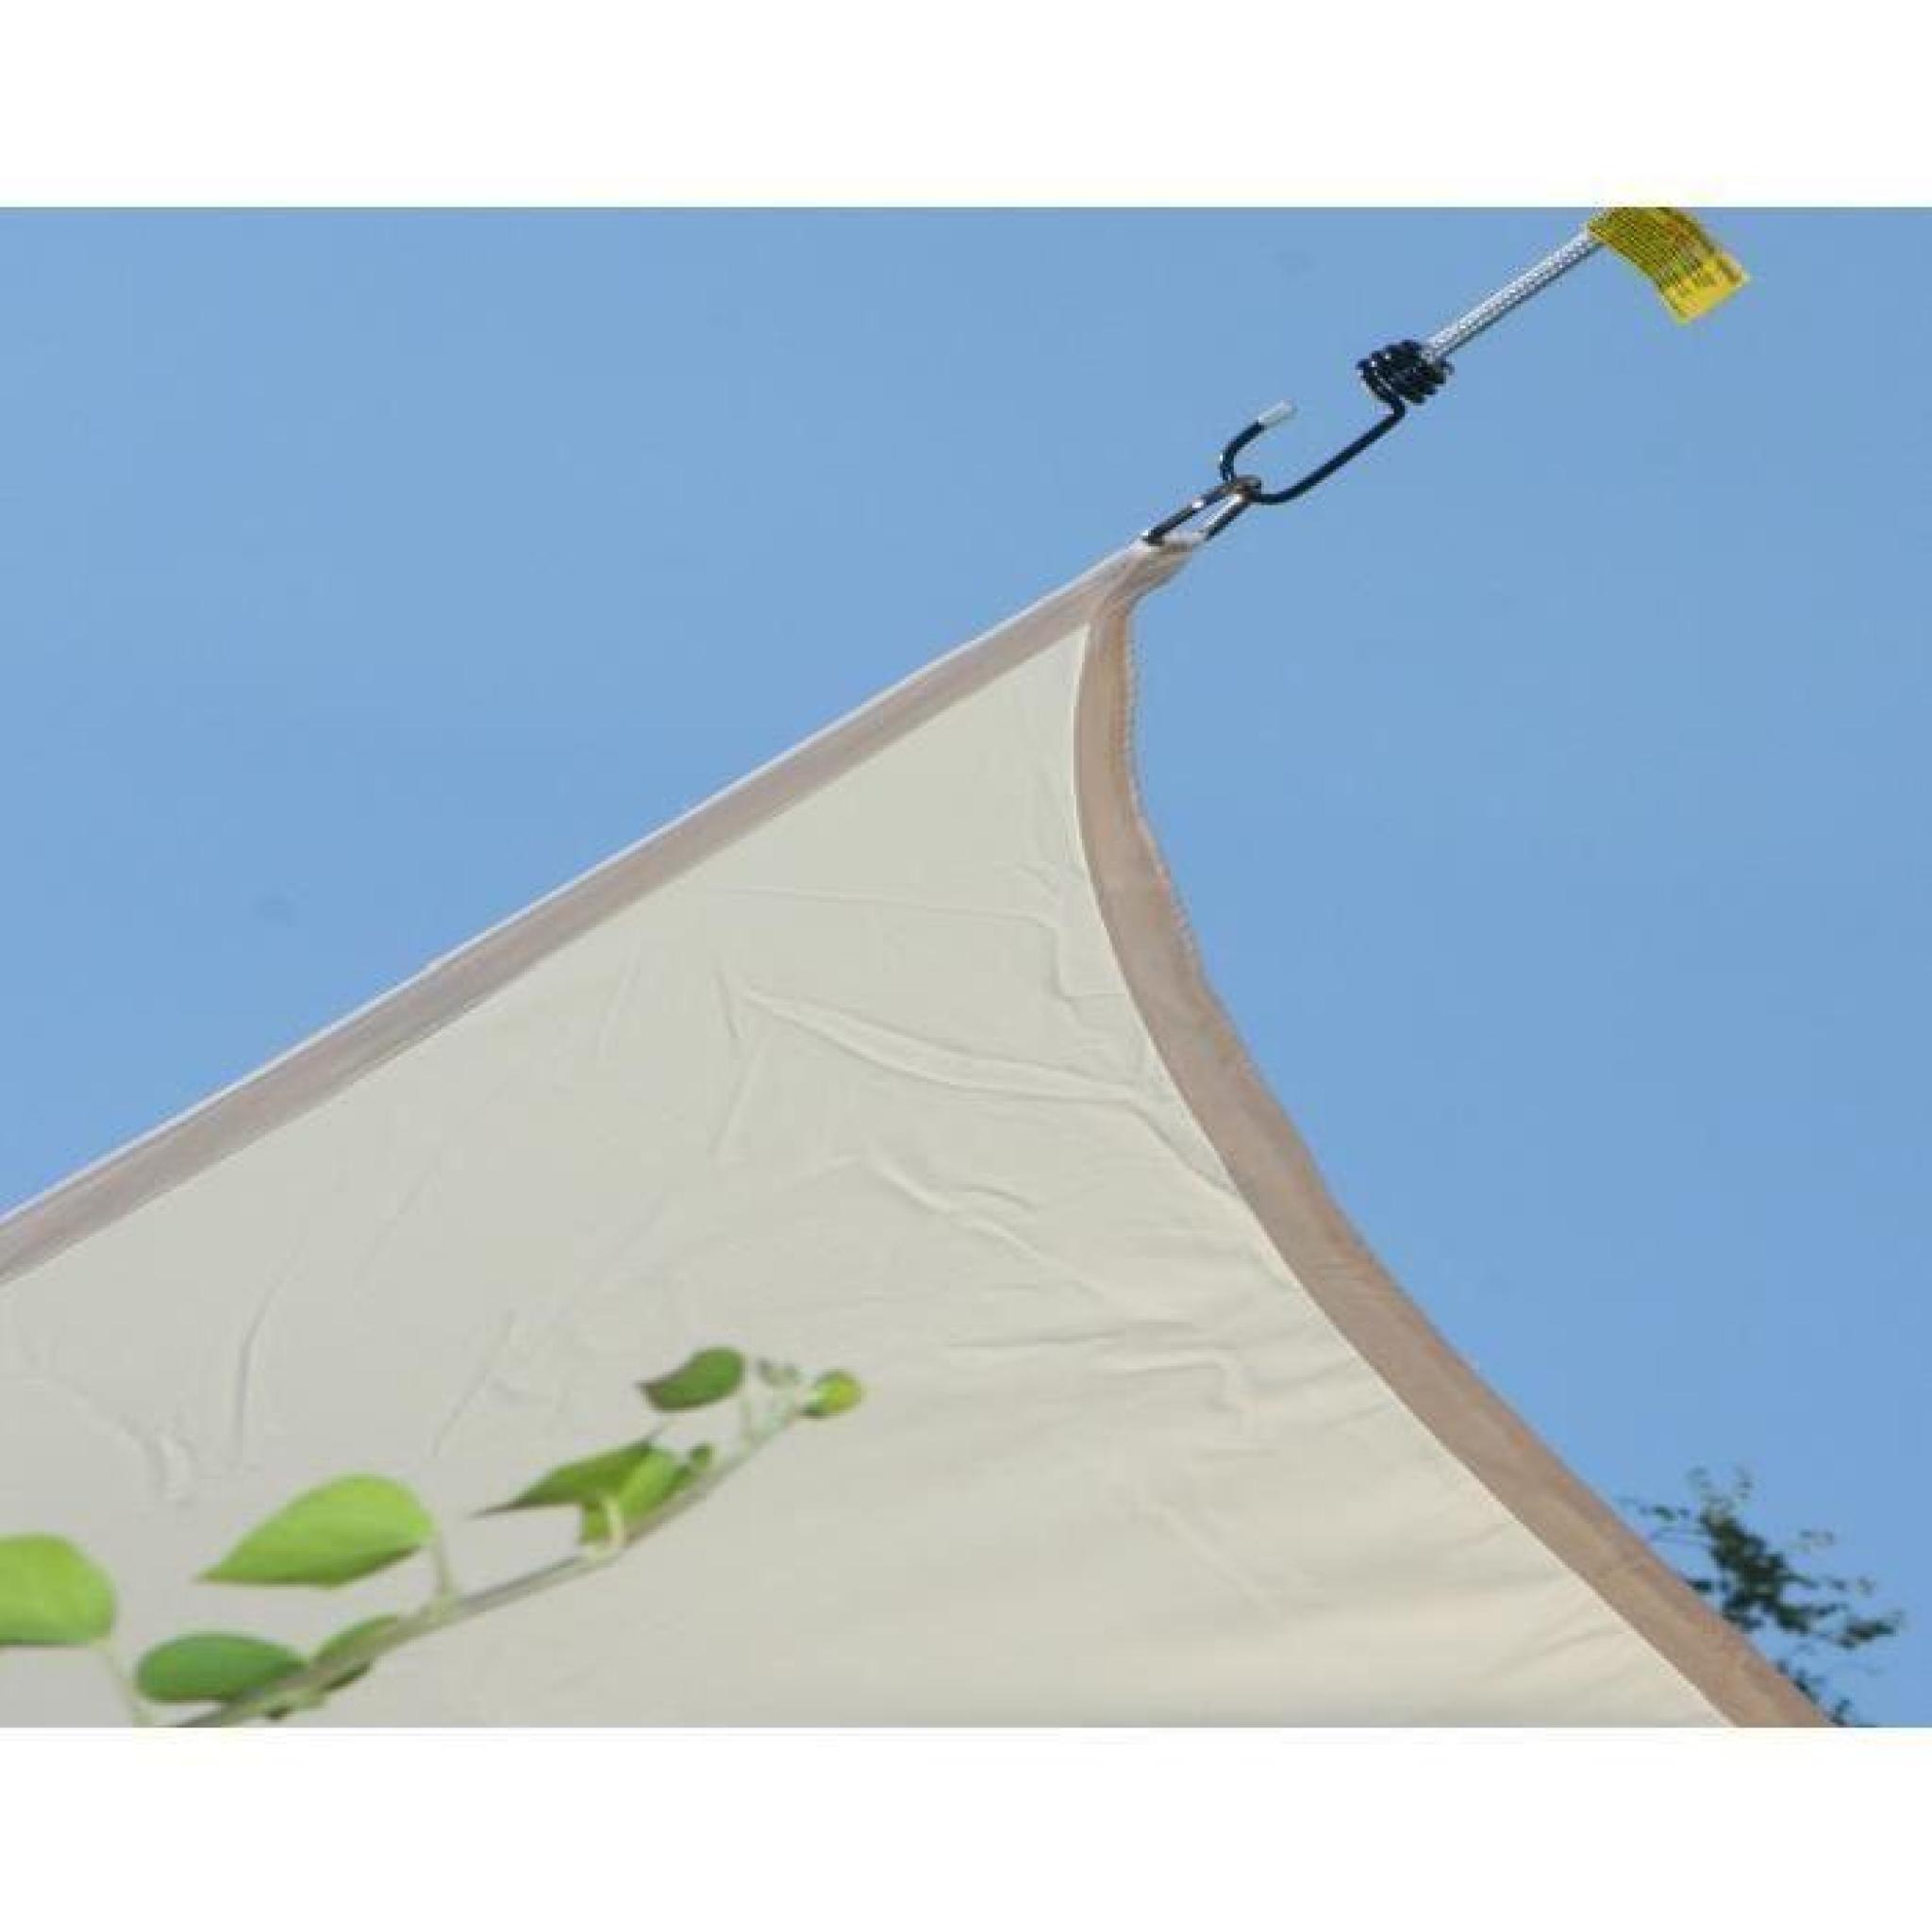 Voile d'ombrage rectangulaire Vert Anis en Polyester 200g-m² anti-UV, 300 x 200 cm avec kit de fixation pas cher